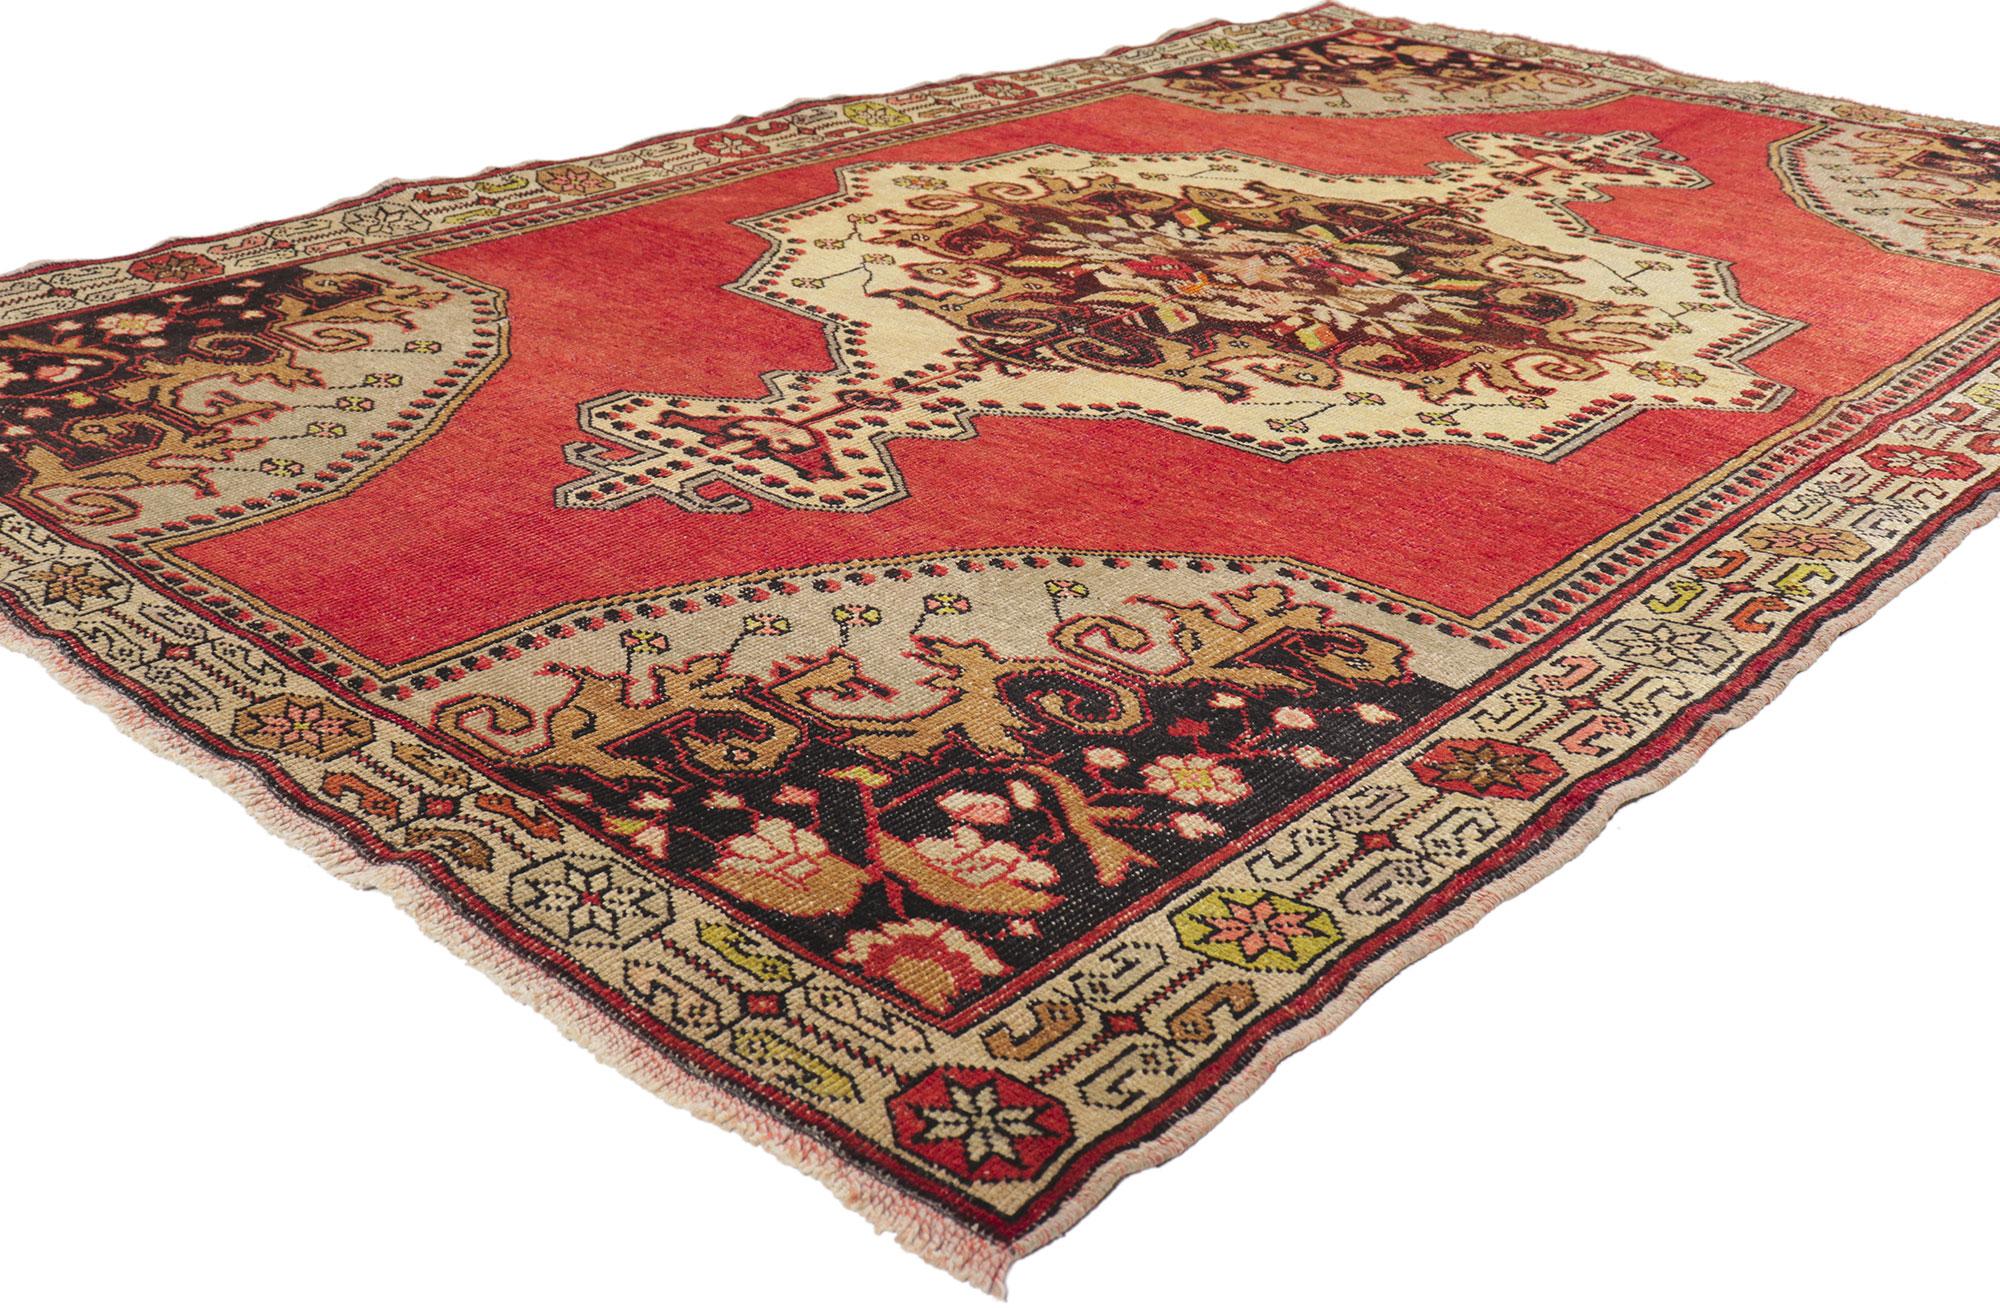 50722 Vintage Red Turkish Oushak Rug, 04'10 X 08'00. Dans ce tapis Oushak turc vintage en laine noué à la main, un majestueux médaillon central cuspidé orné de pendentifs Elibelinde flotte sereinement sur un somptueux champ rouge. Le motif classique